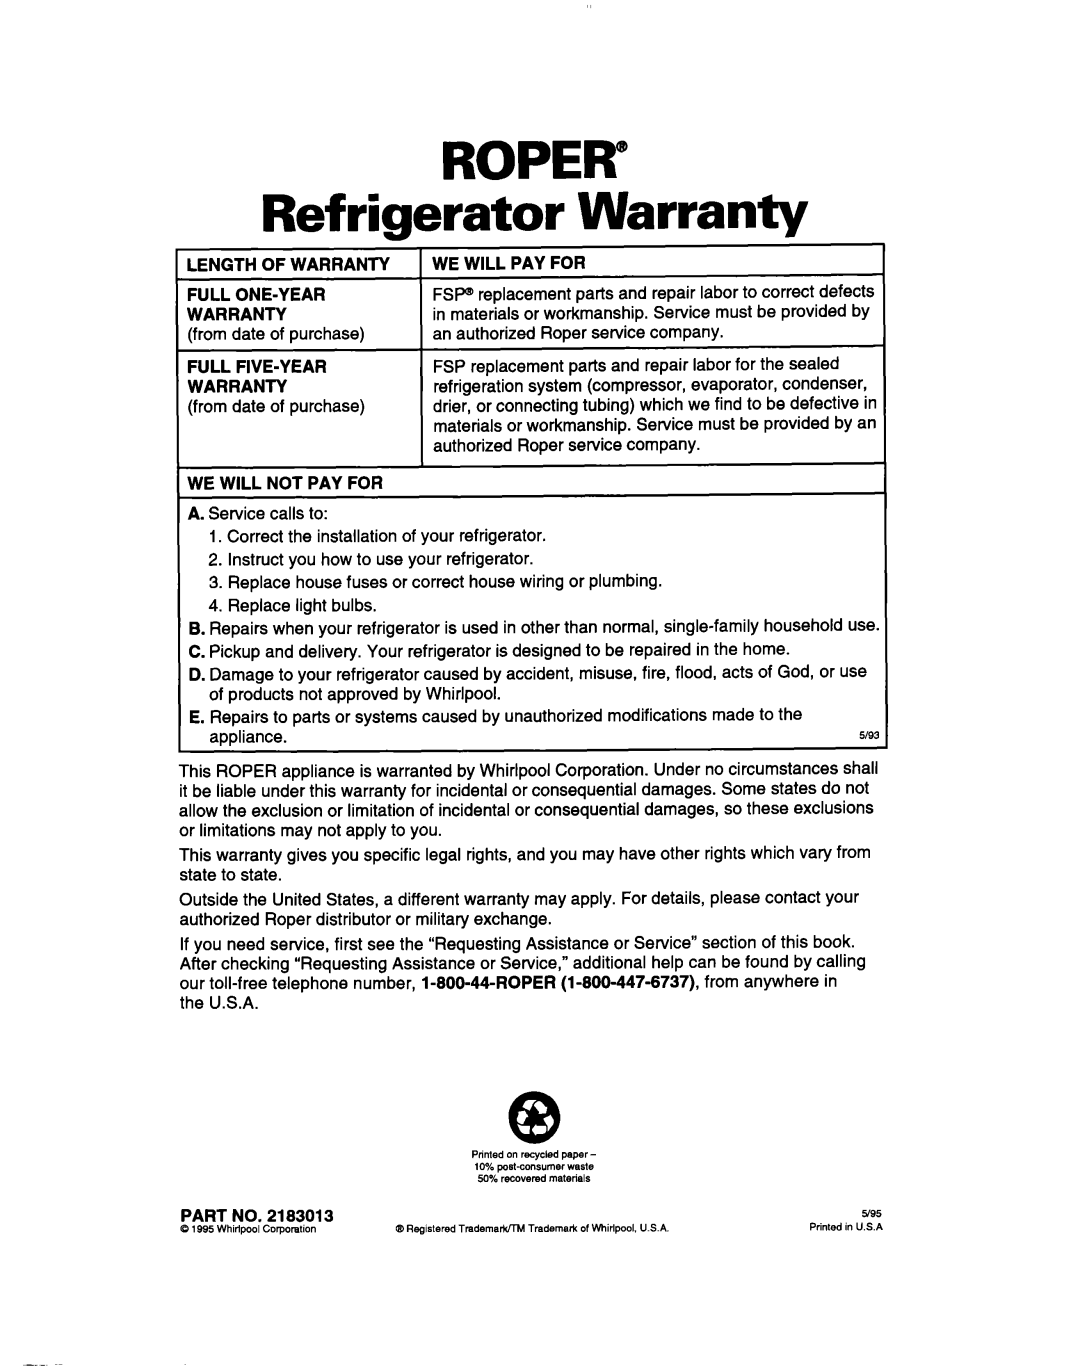 Whirlpool 2183013 warranty ROPER” Refrigerator Warranty 